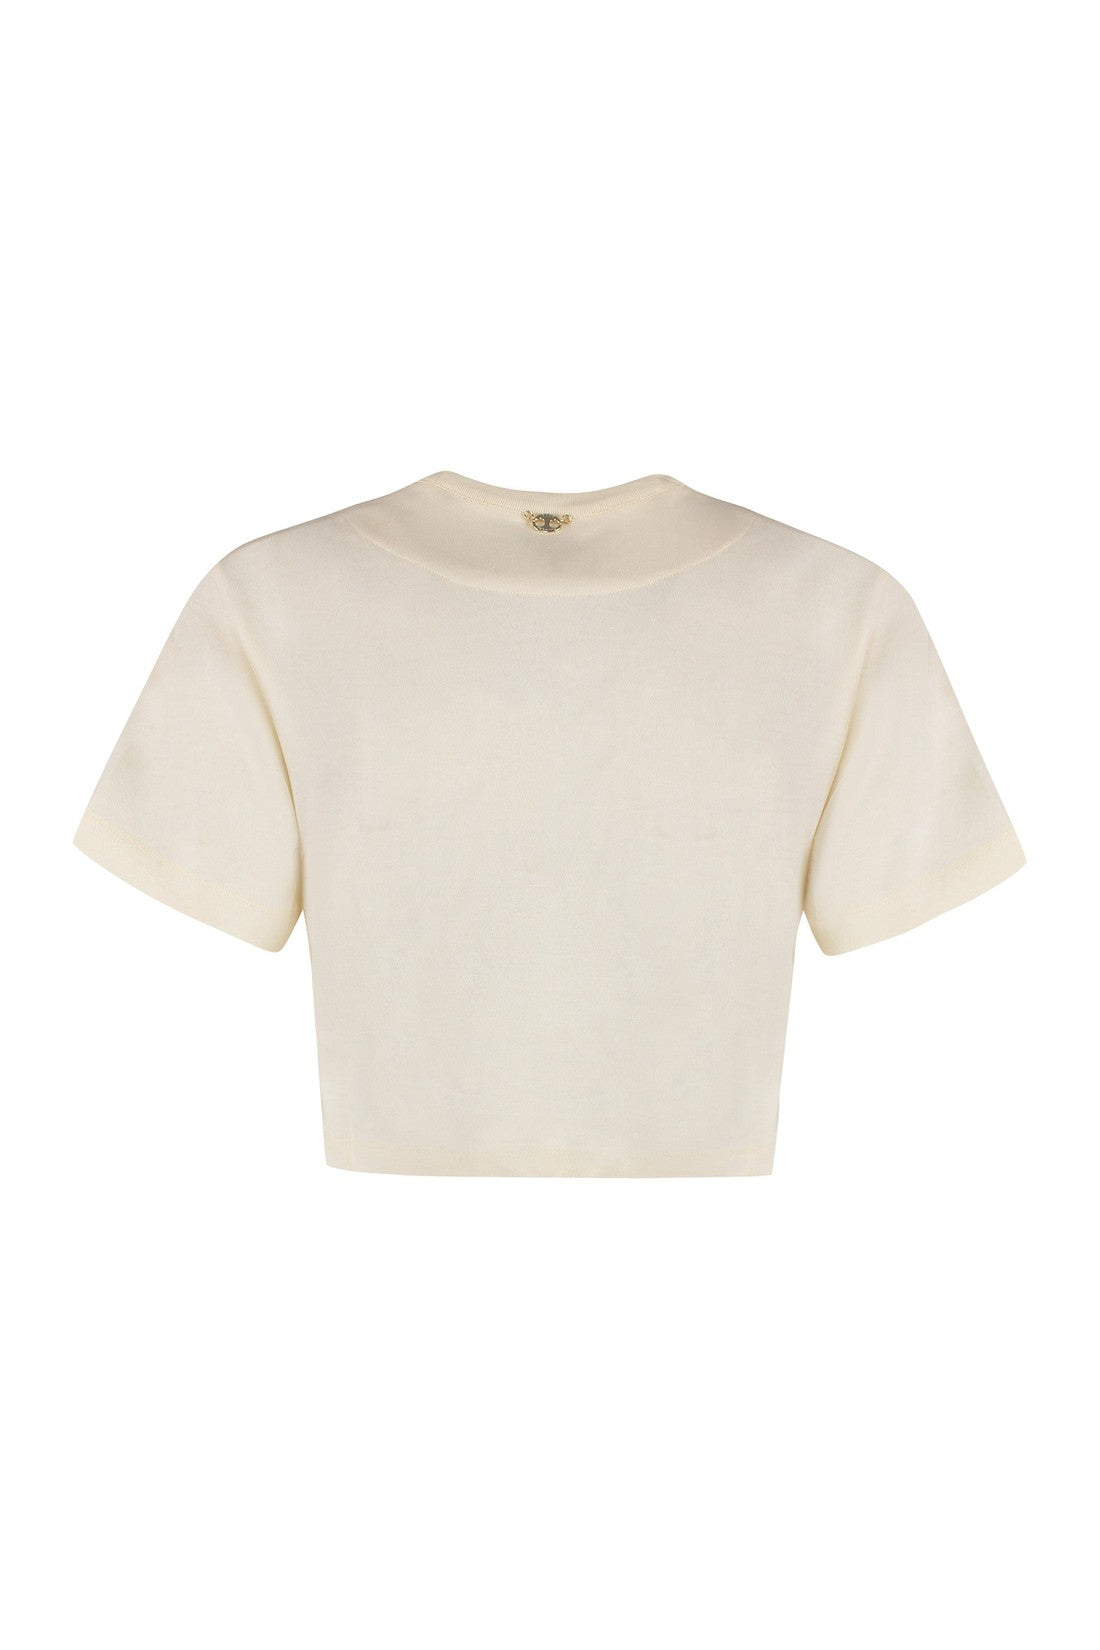 Rabanne-OUTLET-SALE-Cotton T-shirt-ARCHIVIST